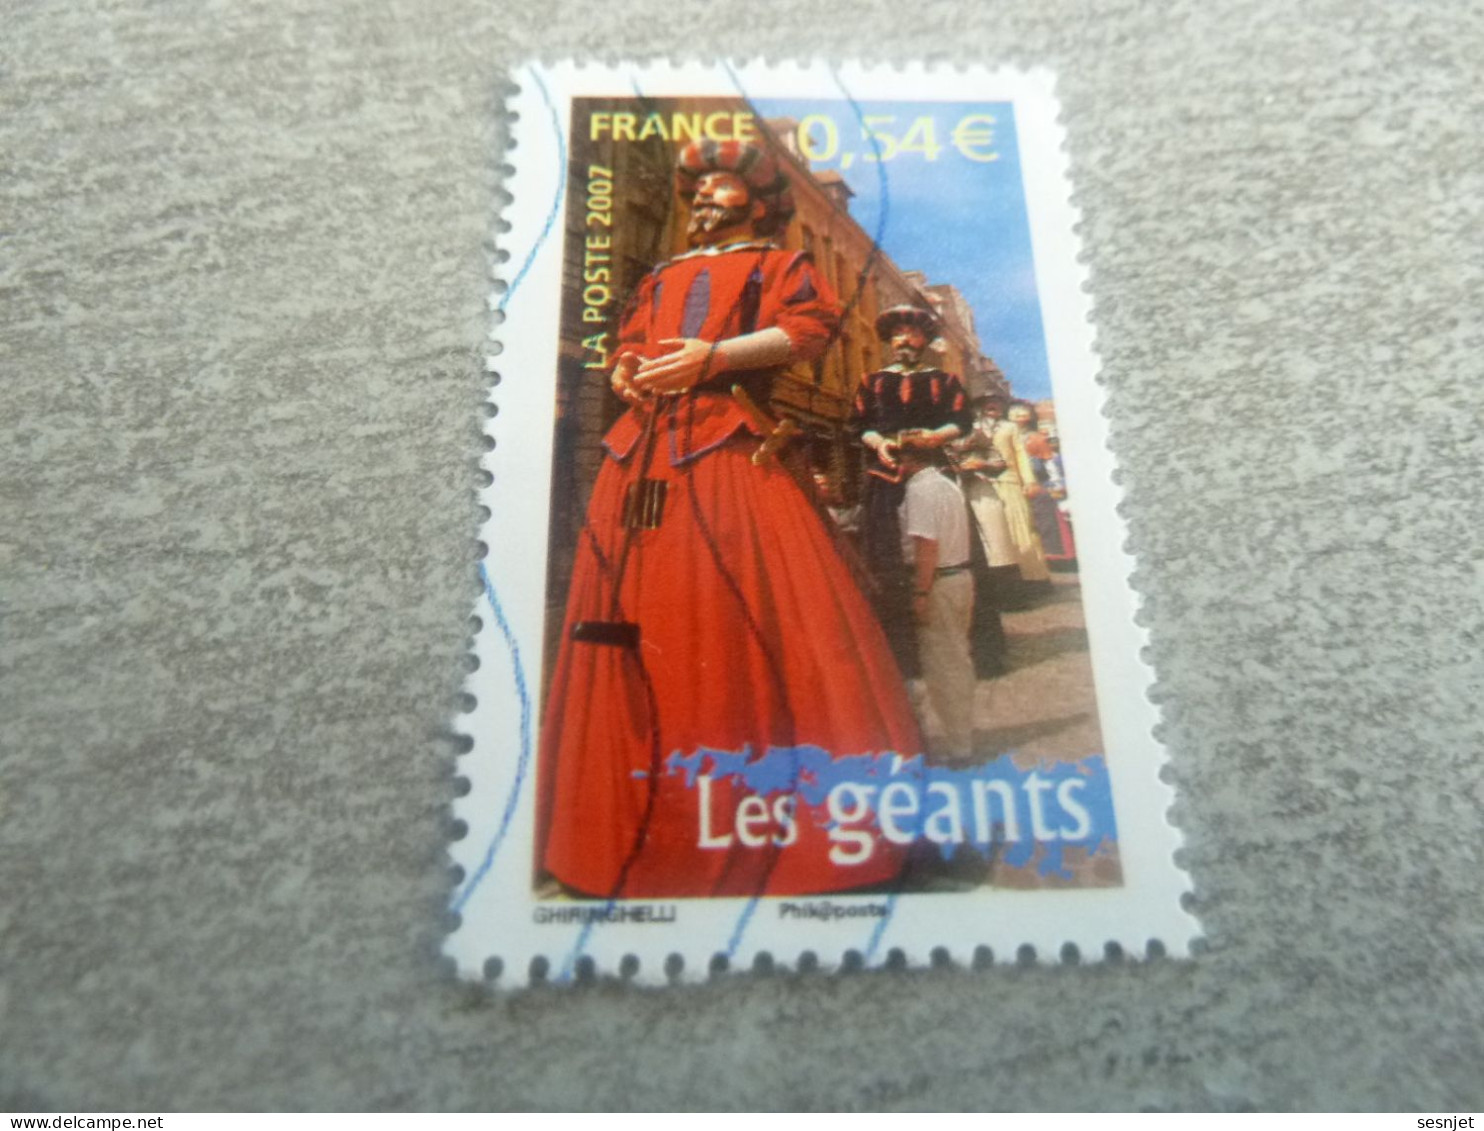 Les Géants - Portraits De Régions - France à Vivre - 0.54 € - Yt 4095 - Multicolore - Oblitéré - Année 2007 - - Gebraucht